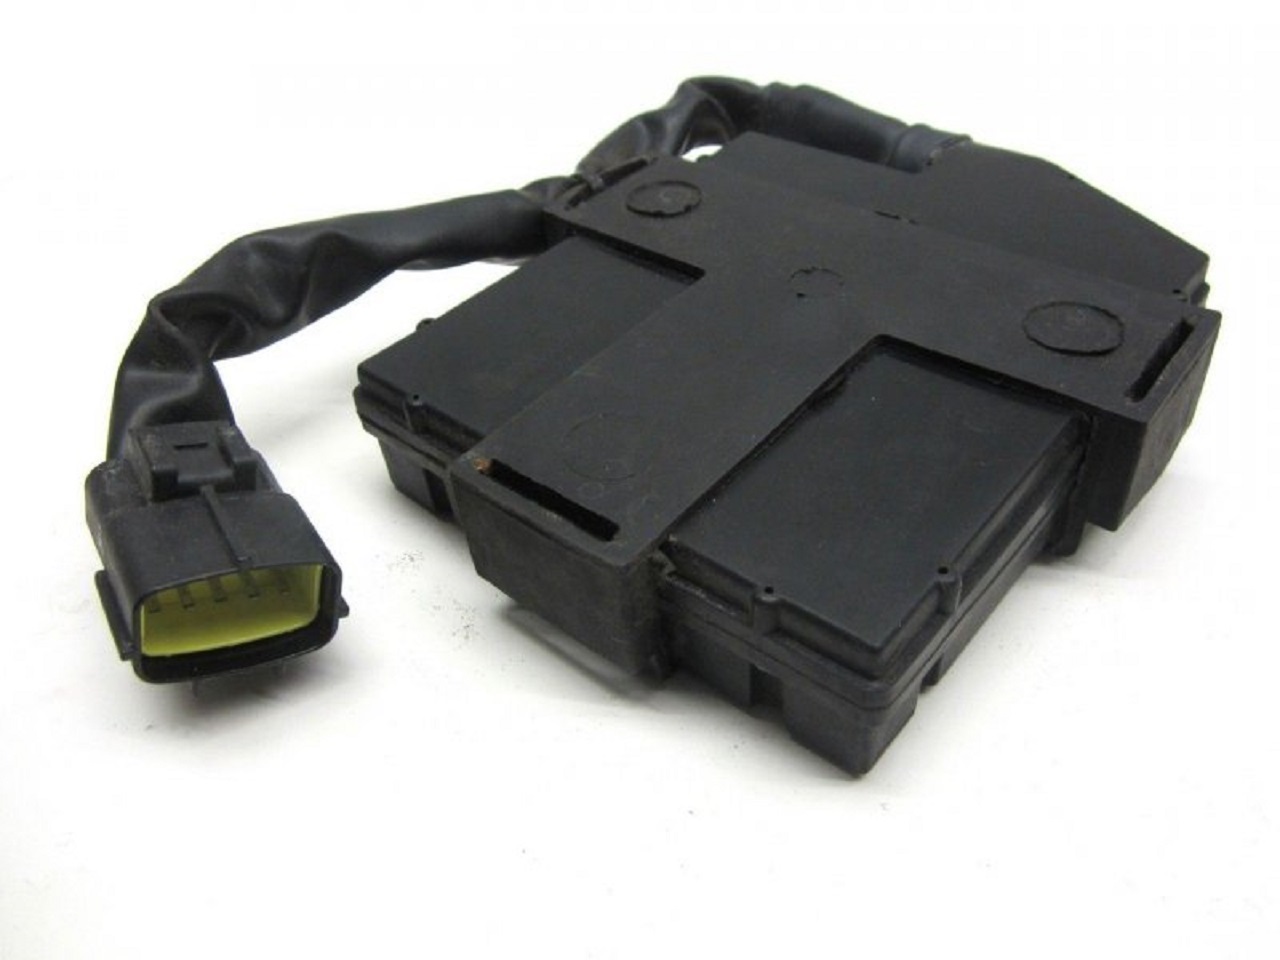 Trident 900 T300 885 TCI CDI dispositif de commande boîte noire (1290060, 1290061)